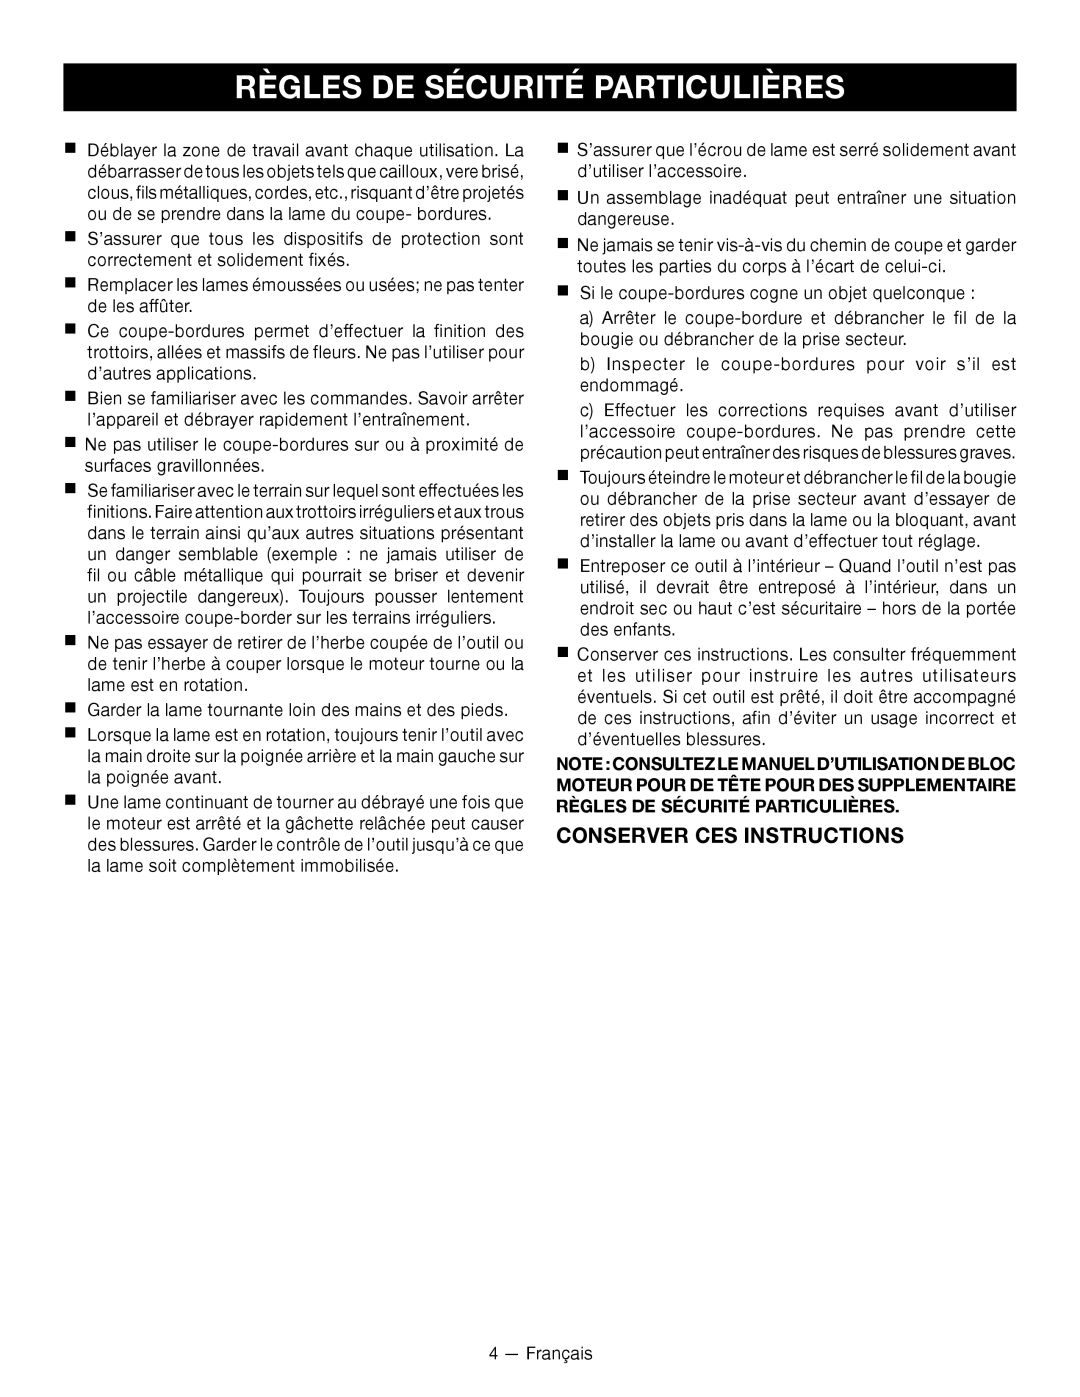 Ryobi RY15518 manuel dutilisation Règles De Sécurité Particulières, Conserver Ces Instructions 